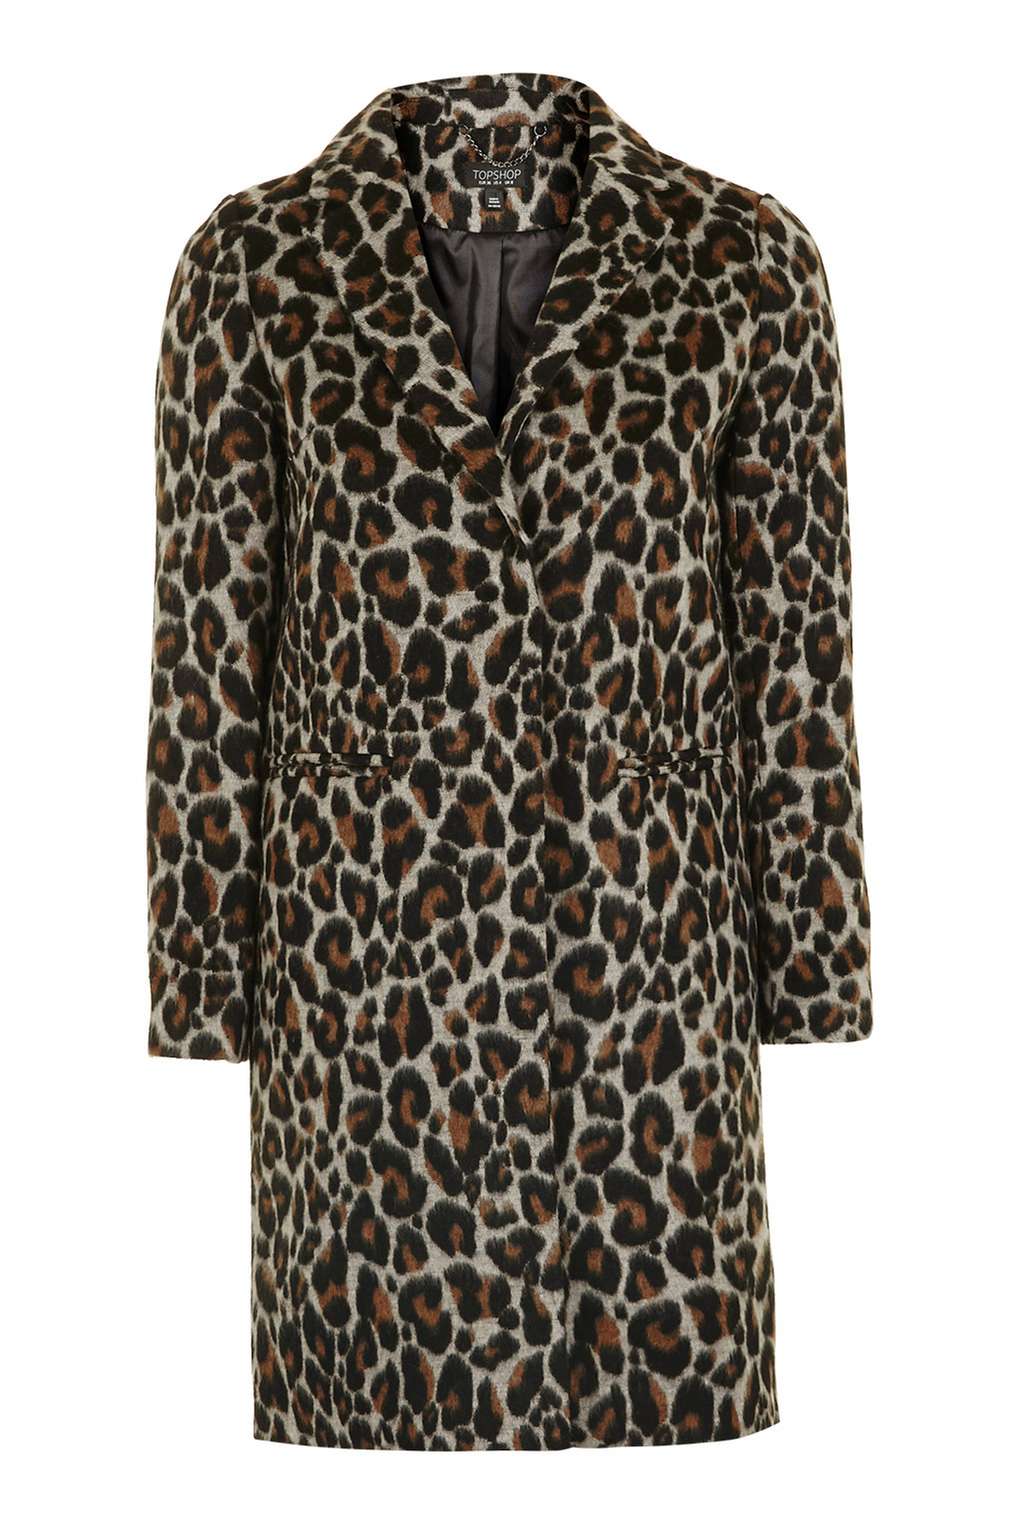 Topshop Leopard Print Coat